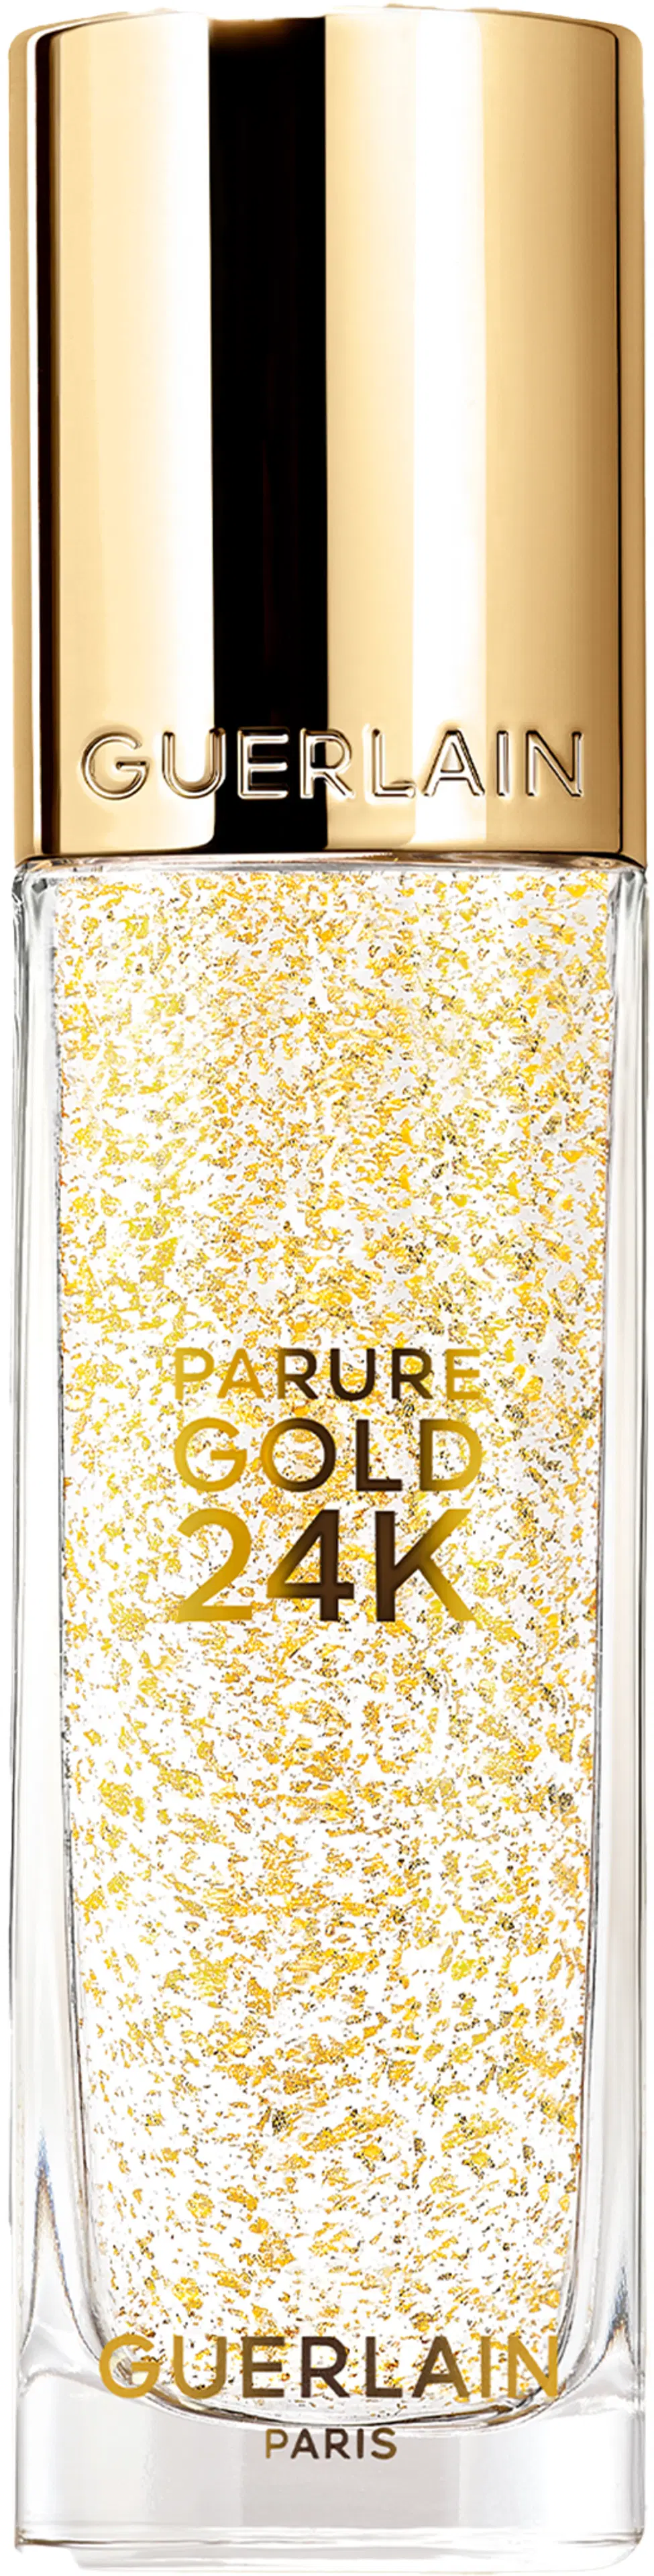 Guerlain Parure Gold 24K -meikinpohjustaja 30ml